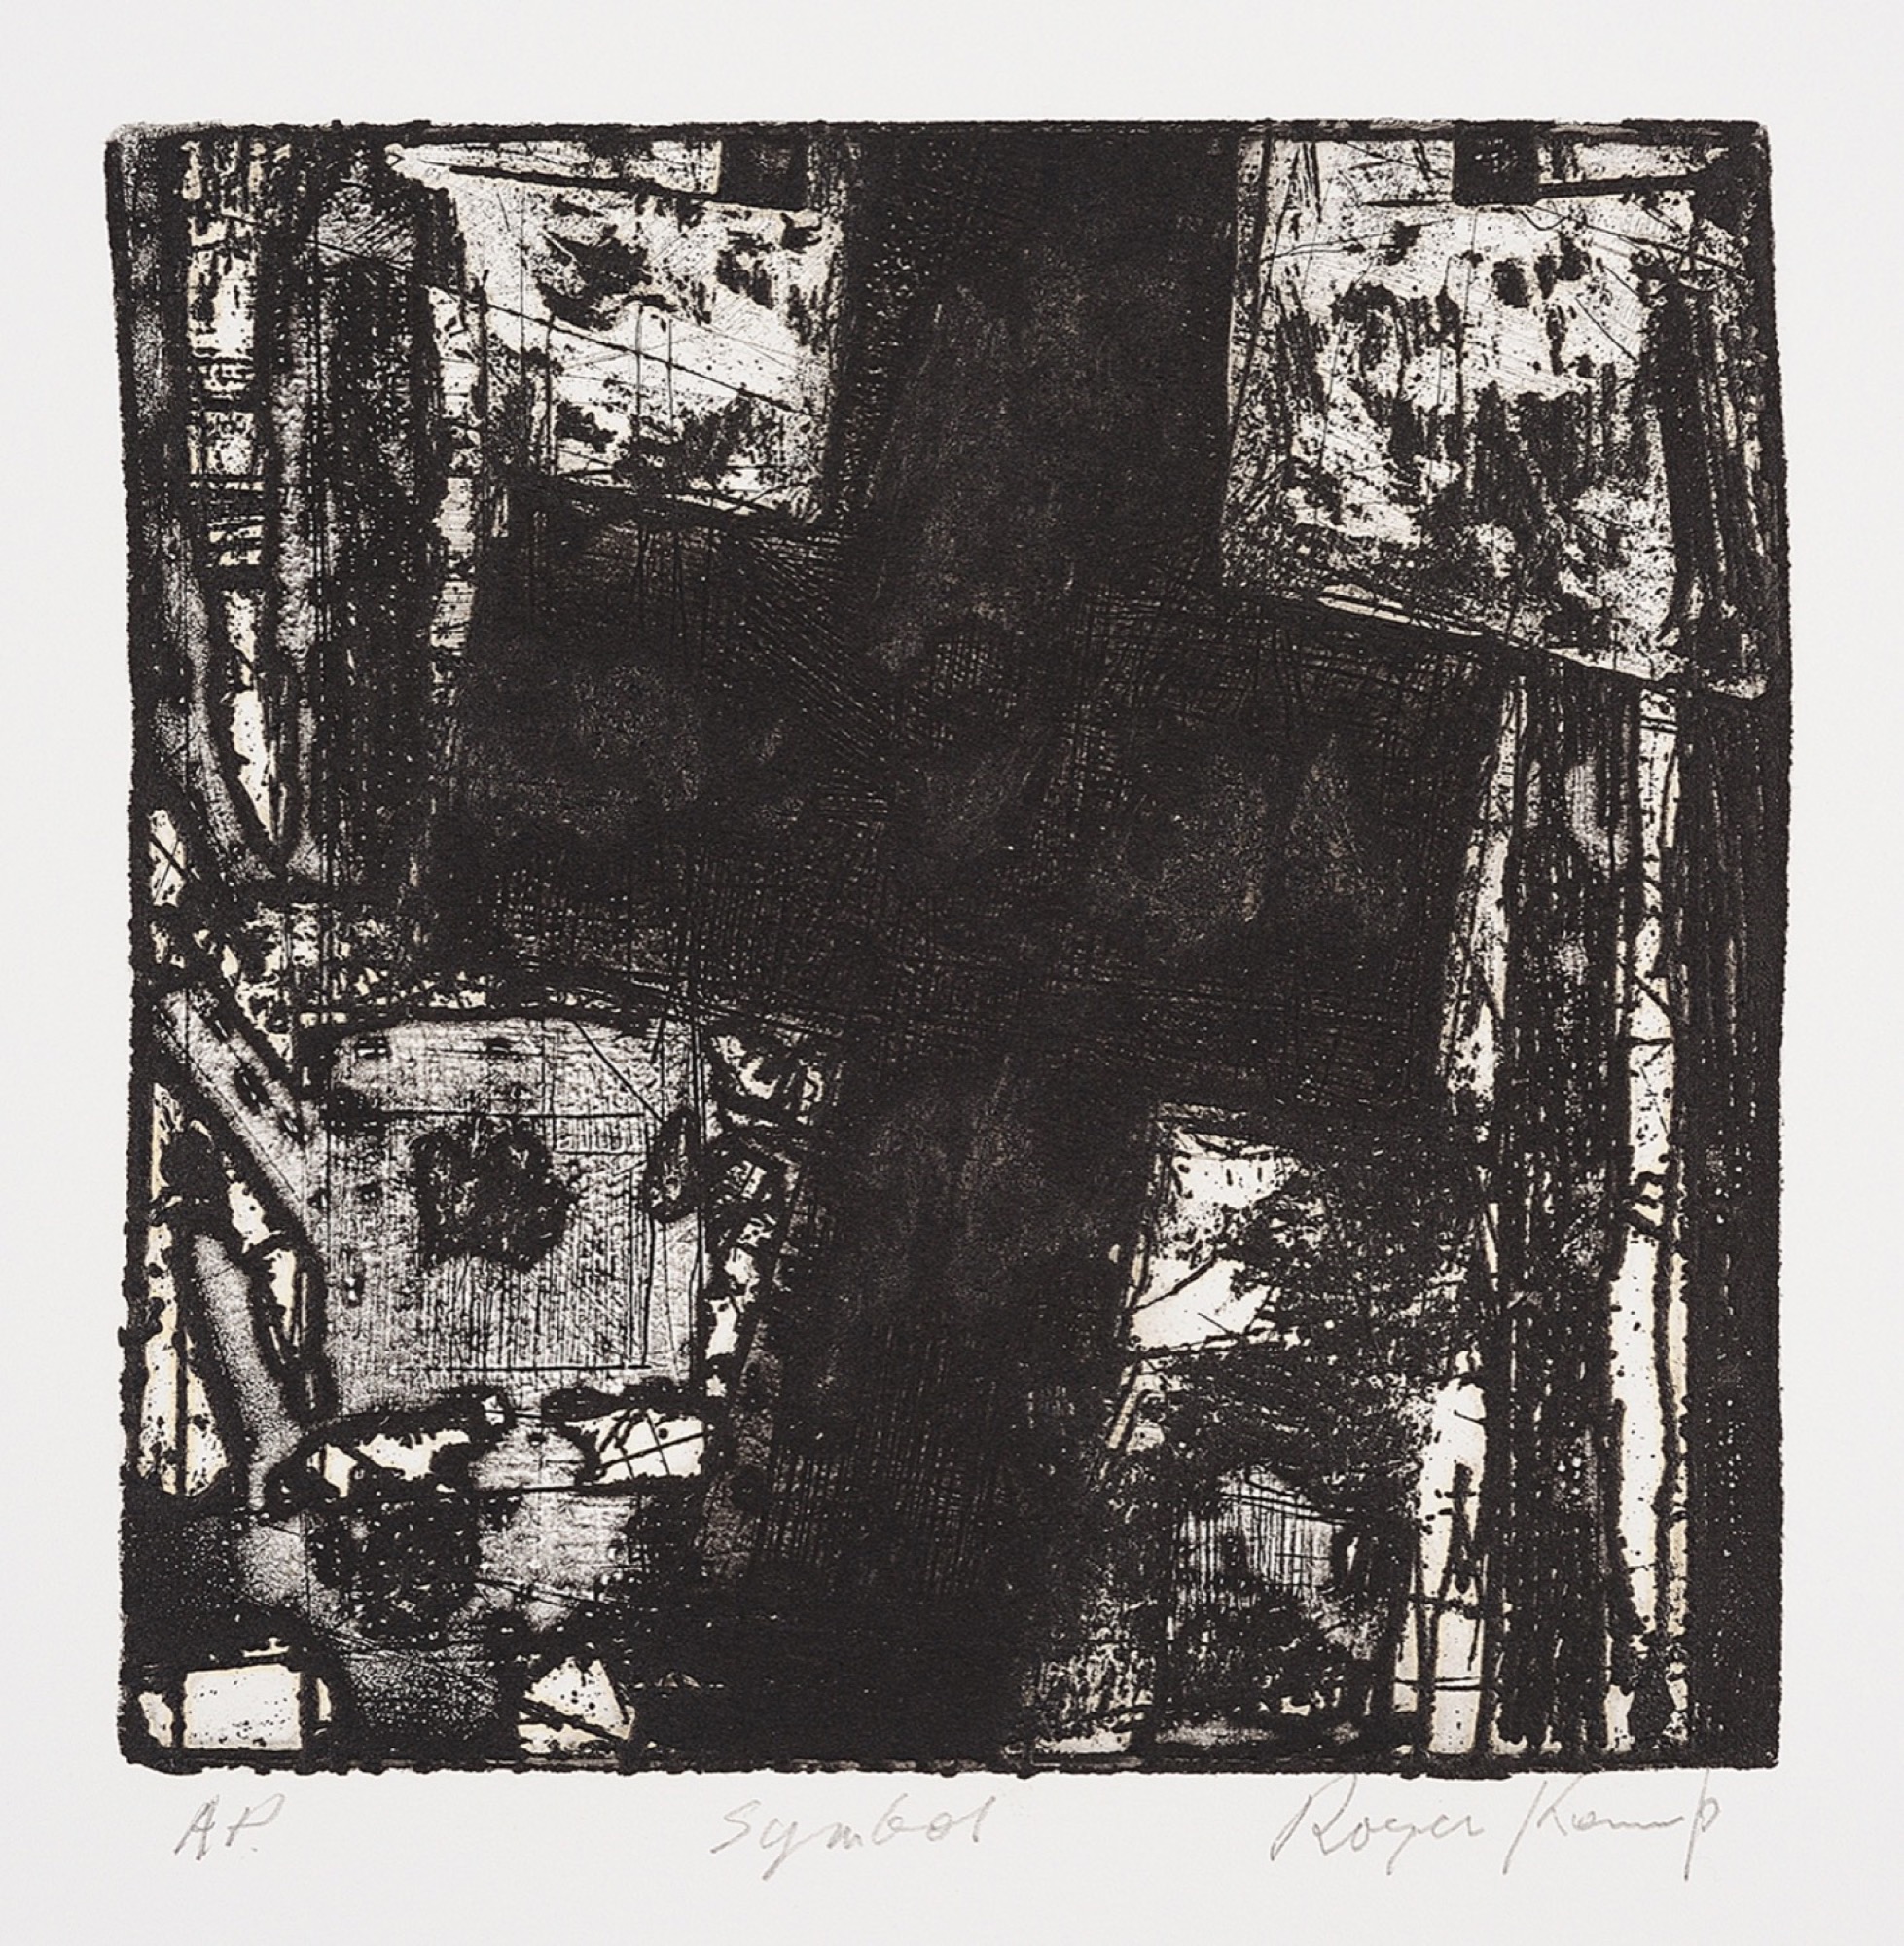 Roger Kemp, <em>Symbol</em>, 1972, etching on paper, 17.4 x 17.4 cm. Copyright Estate of Roger Kemp, Image courtesy Charles Nodrum Gallery